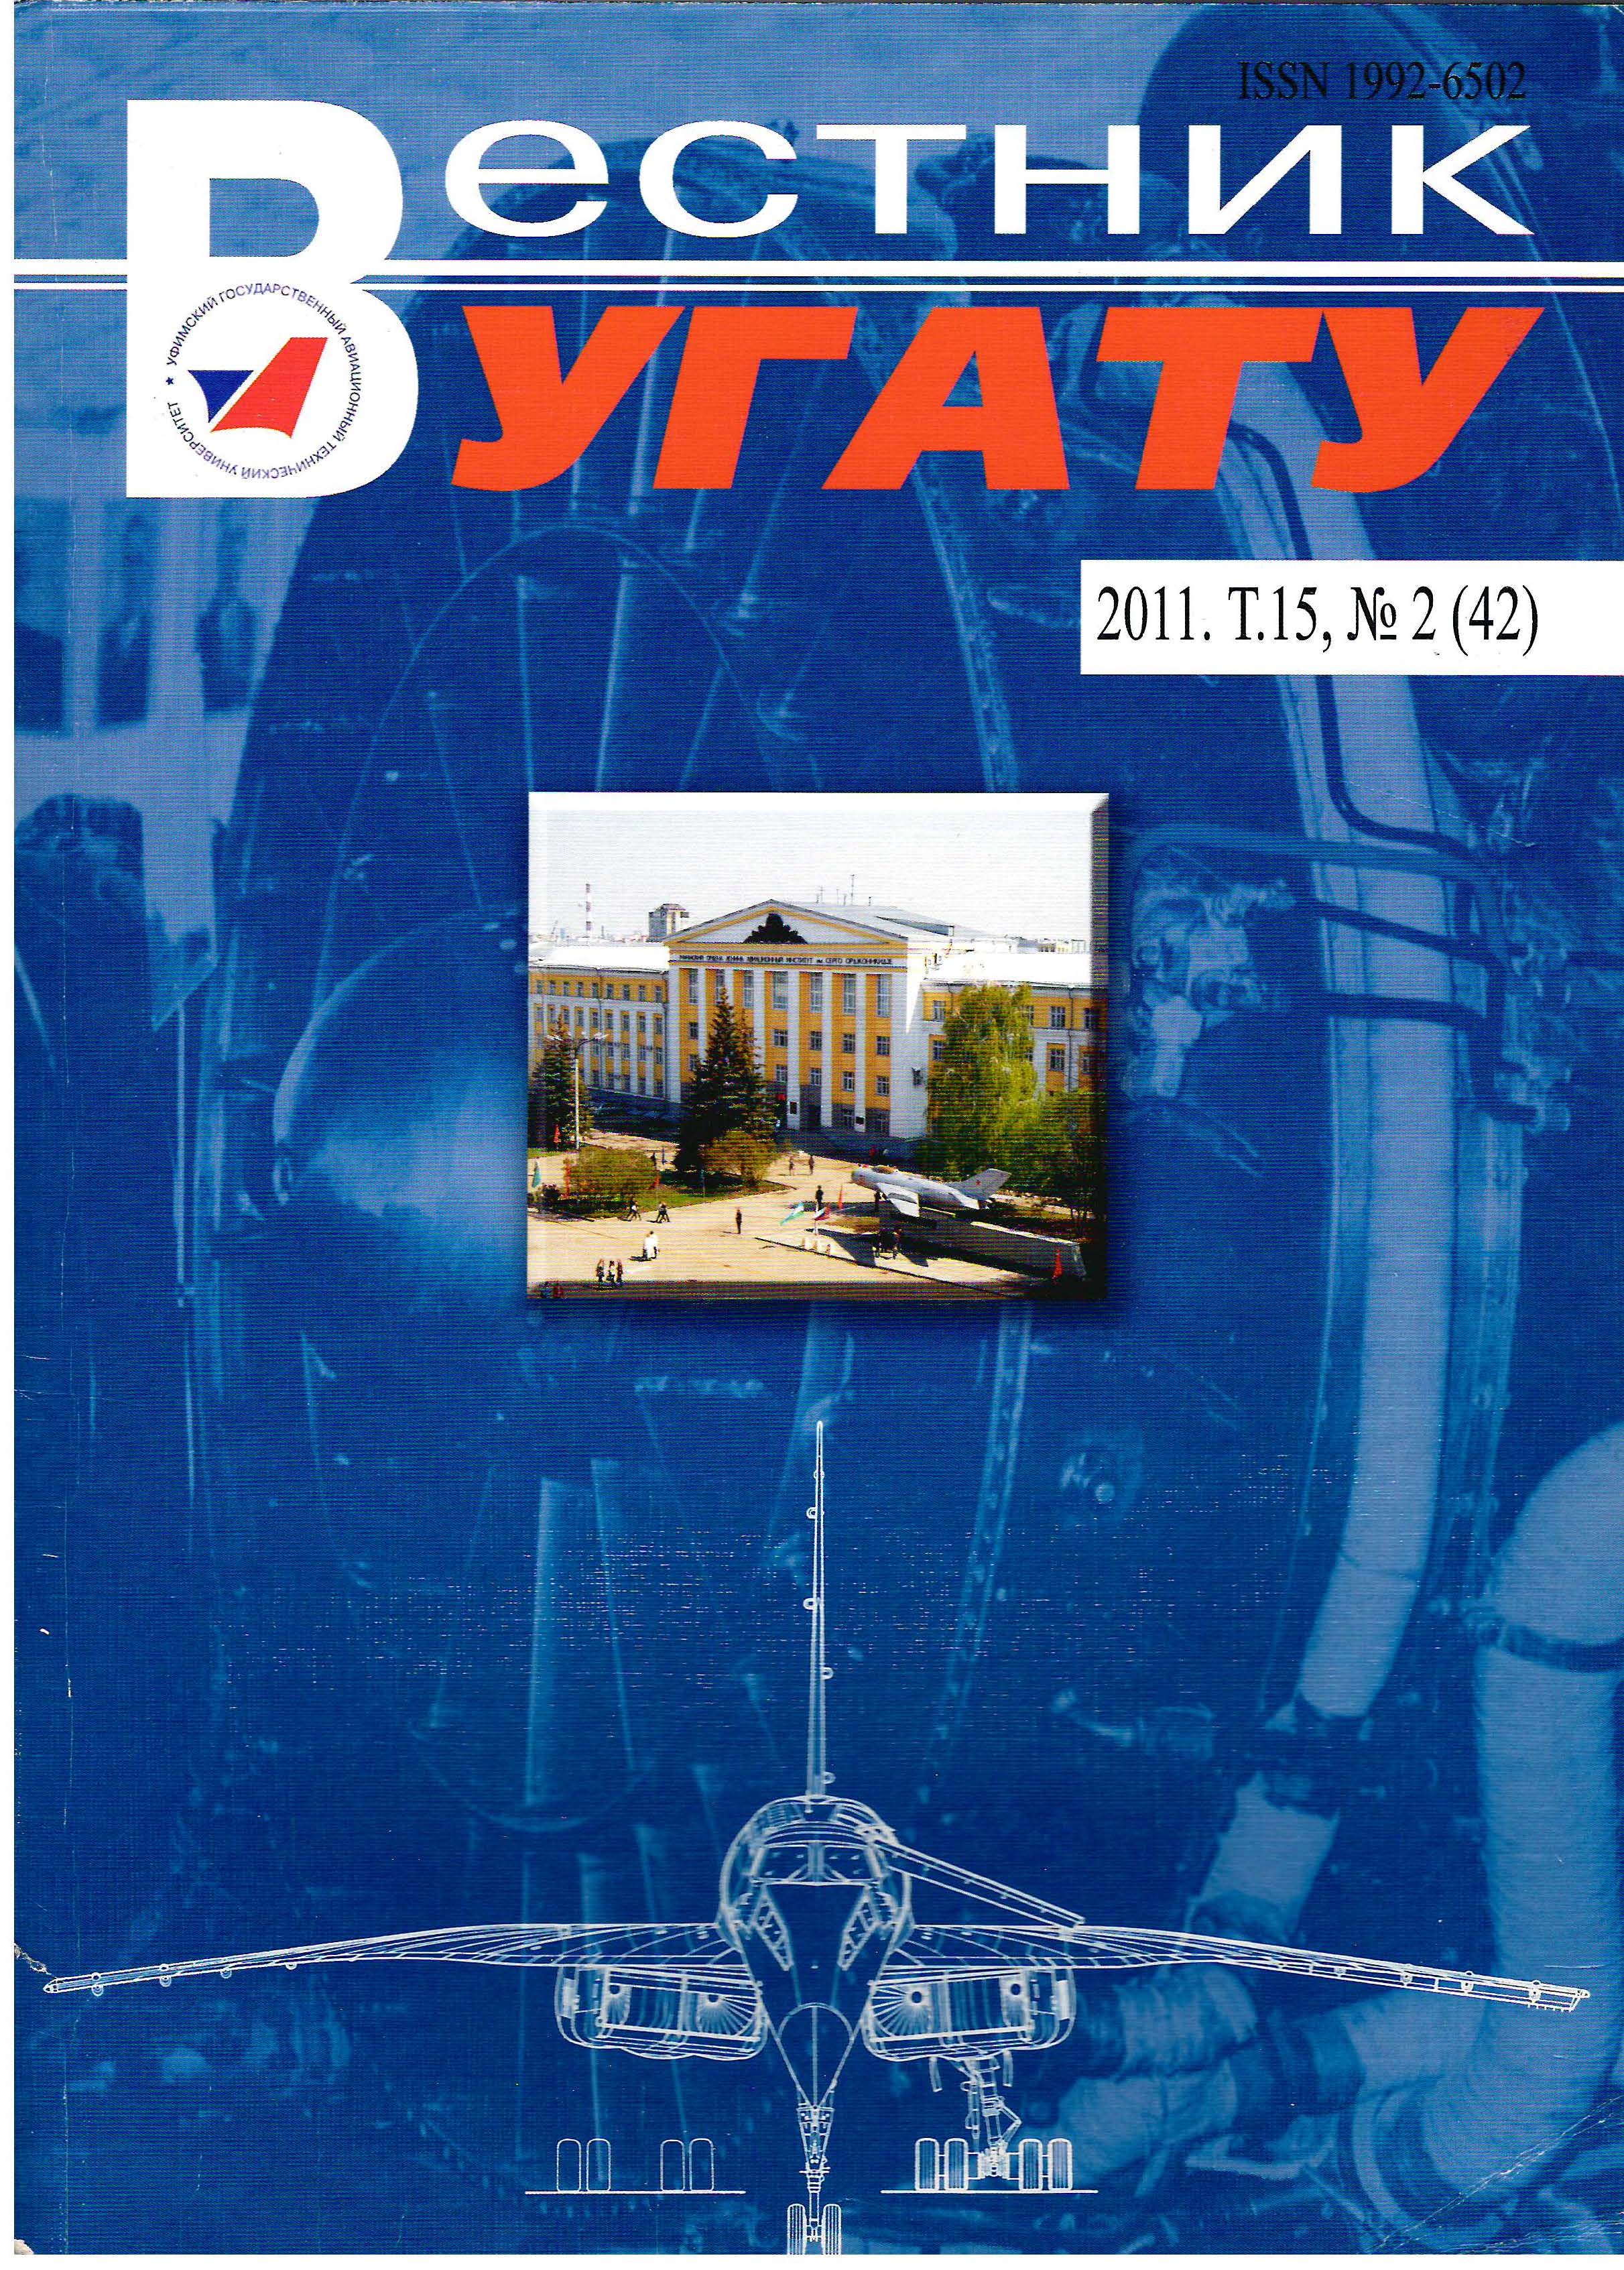 					View Vol. 15 No. 2 (42) (2011): Вестник УГАТУ
				